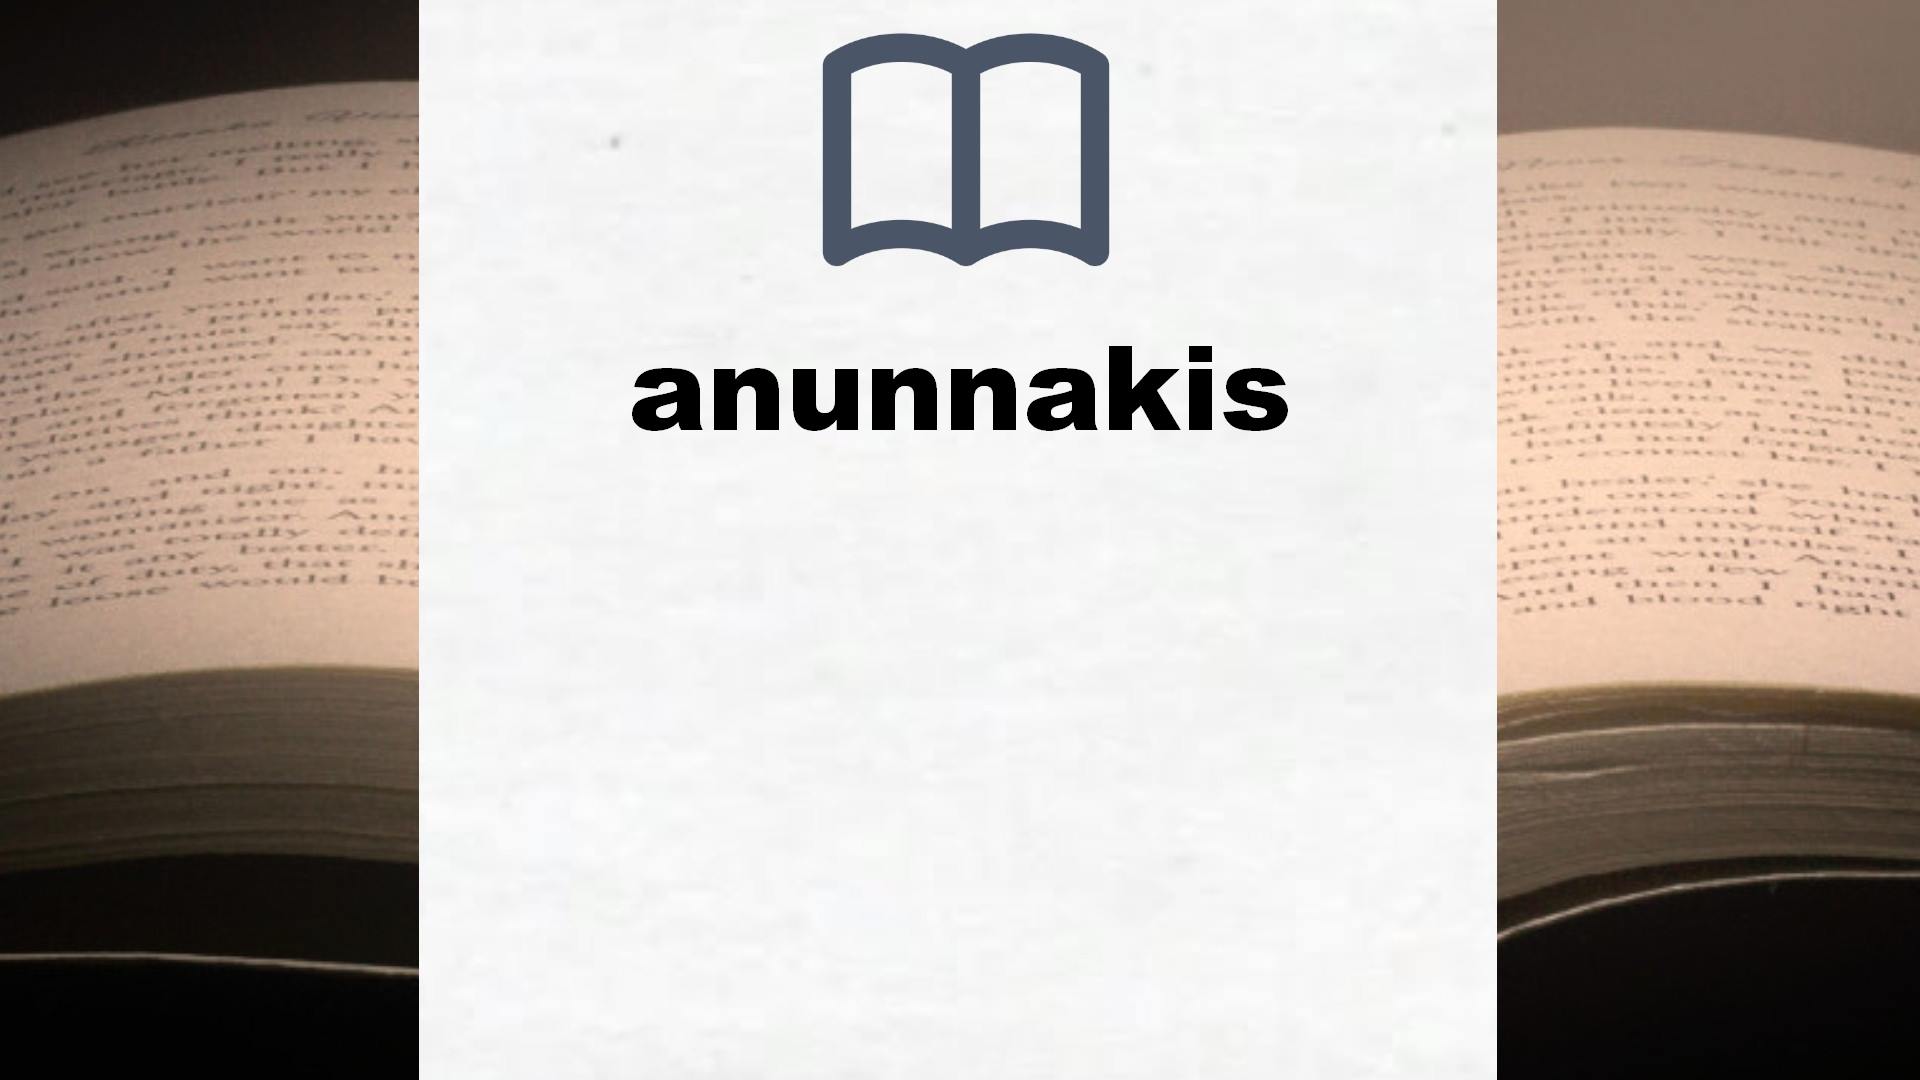 Libros sobre anunnakis